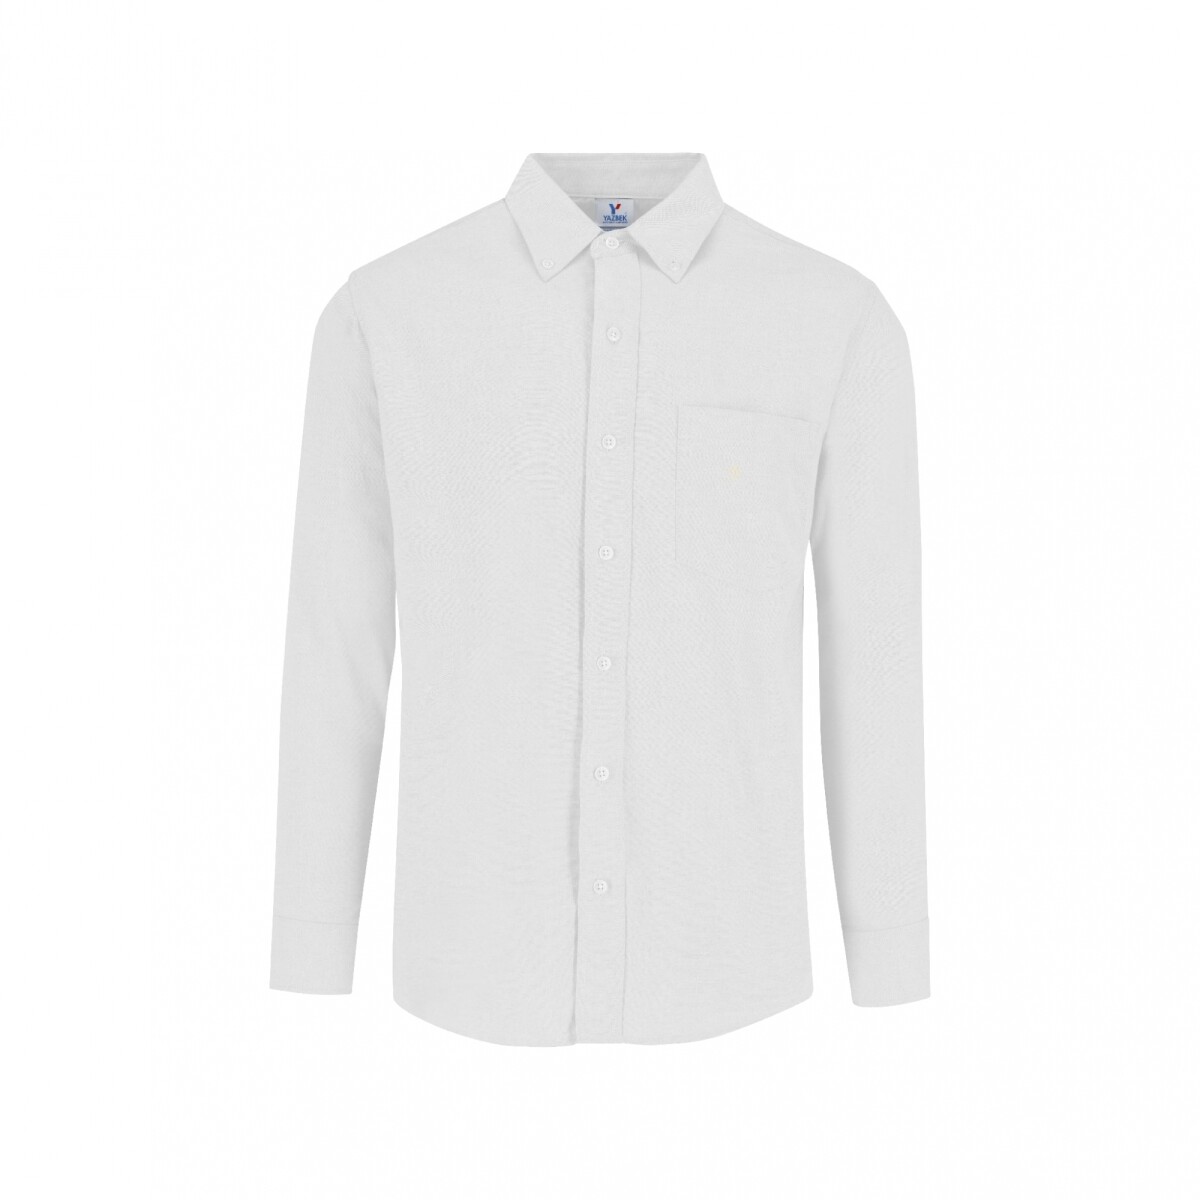 Camisa oxford manga larga - Blanco 